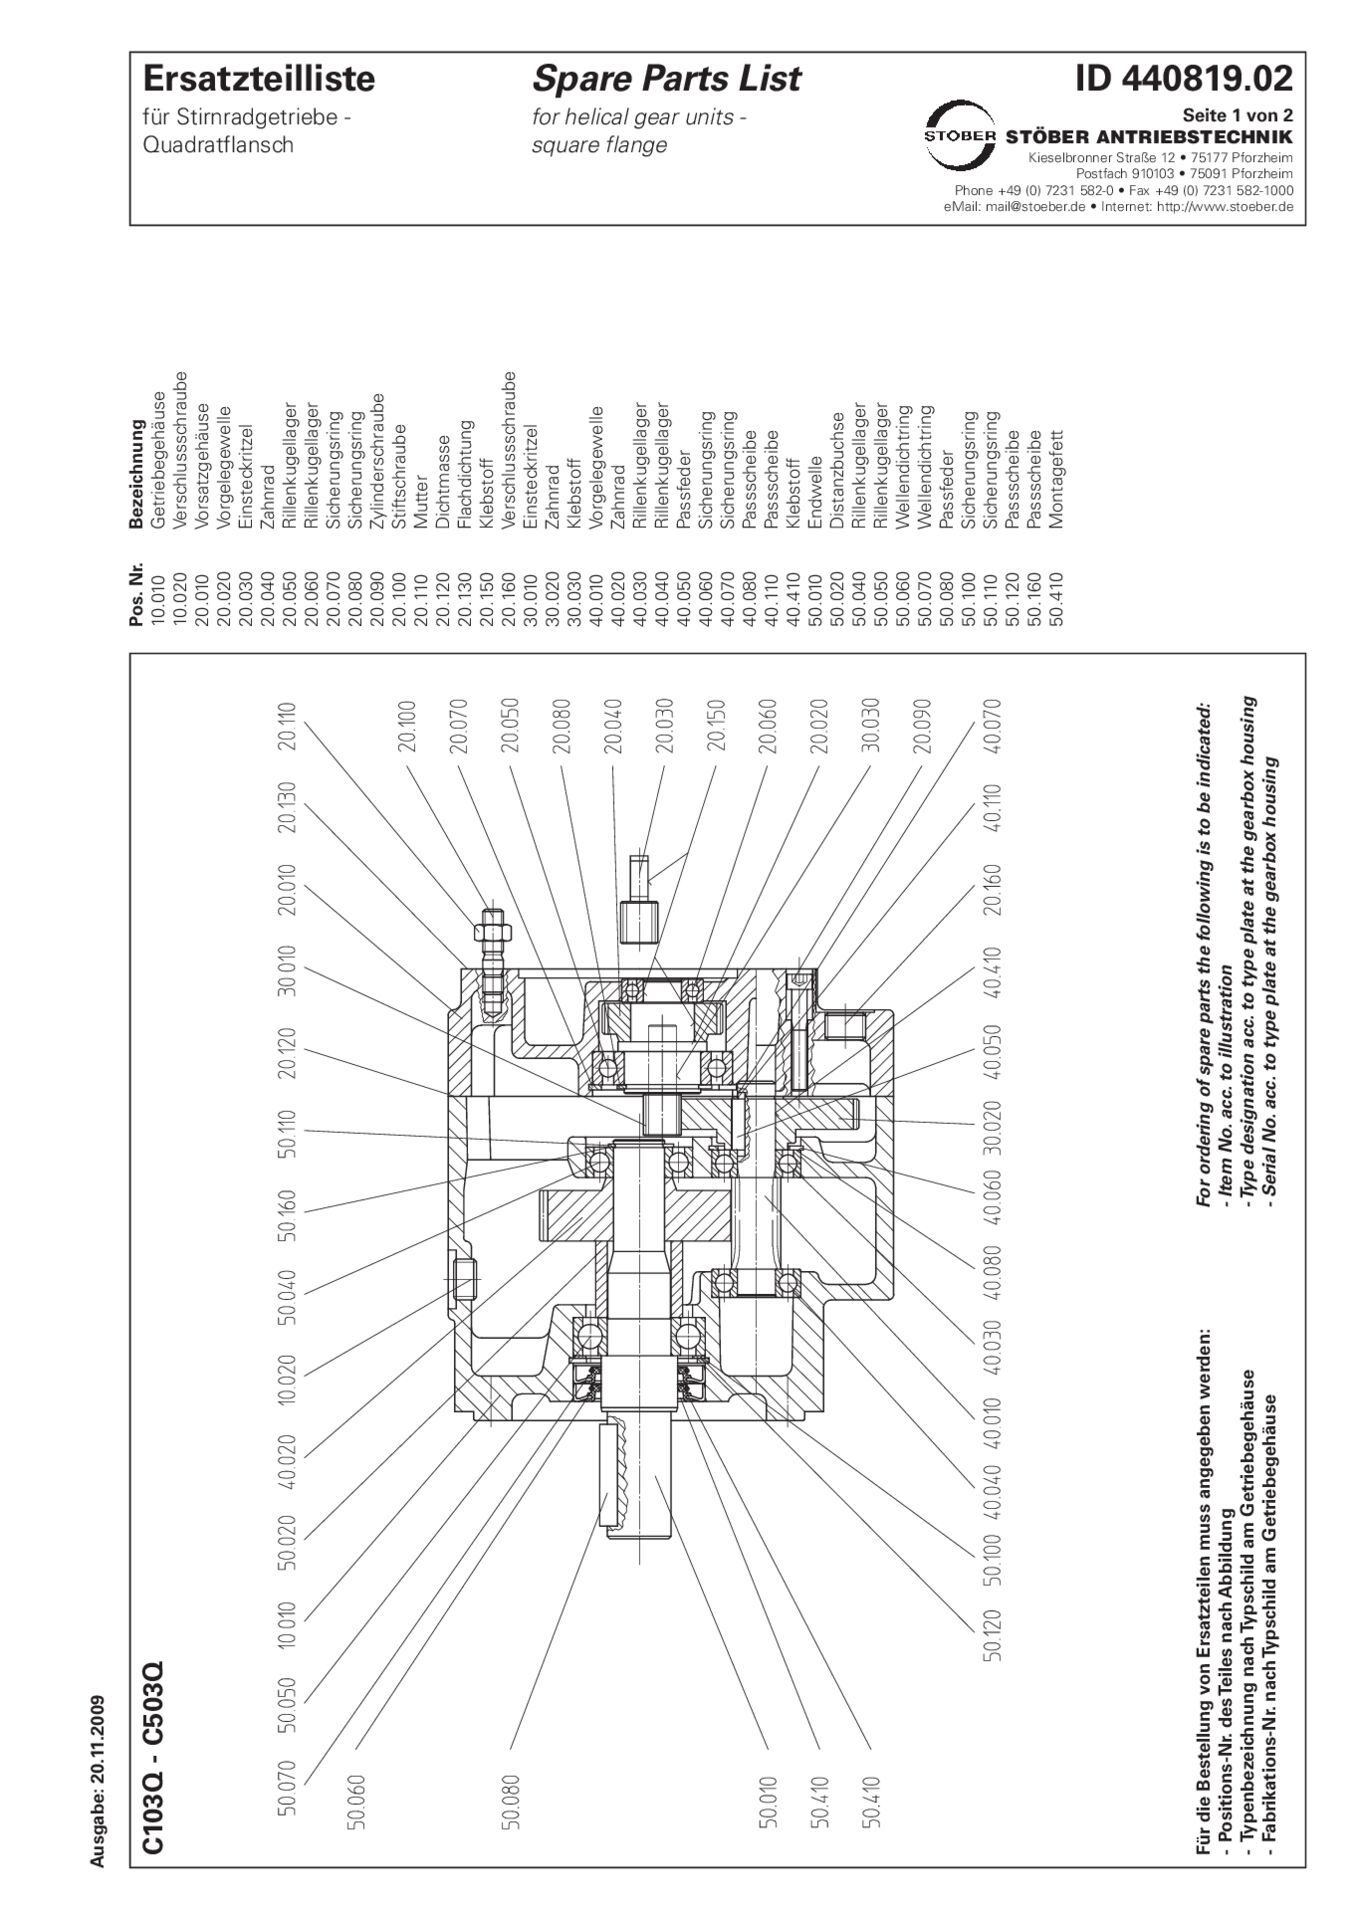 Replacement parts list helical gear units C103 C203 C303 C403 C503 QErsatzteilliste Stirnradgetriebe C103 C203 C303 C403 C503 Q